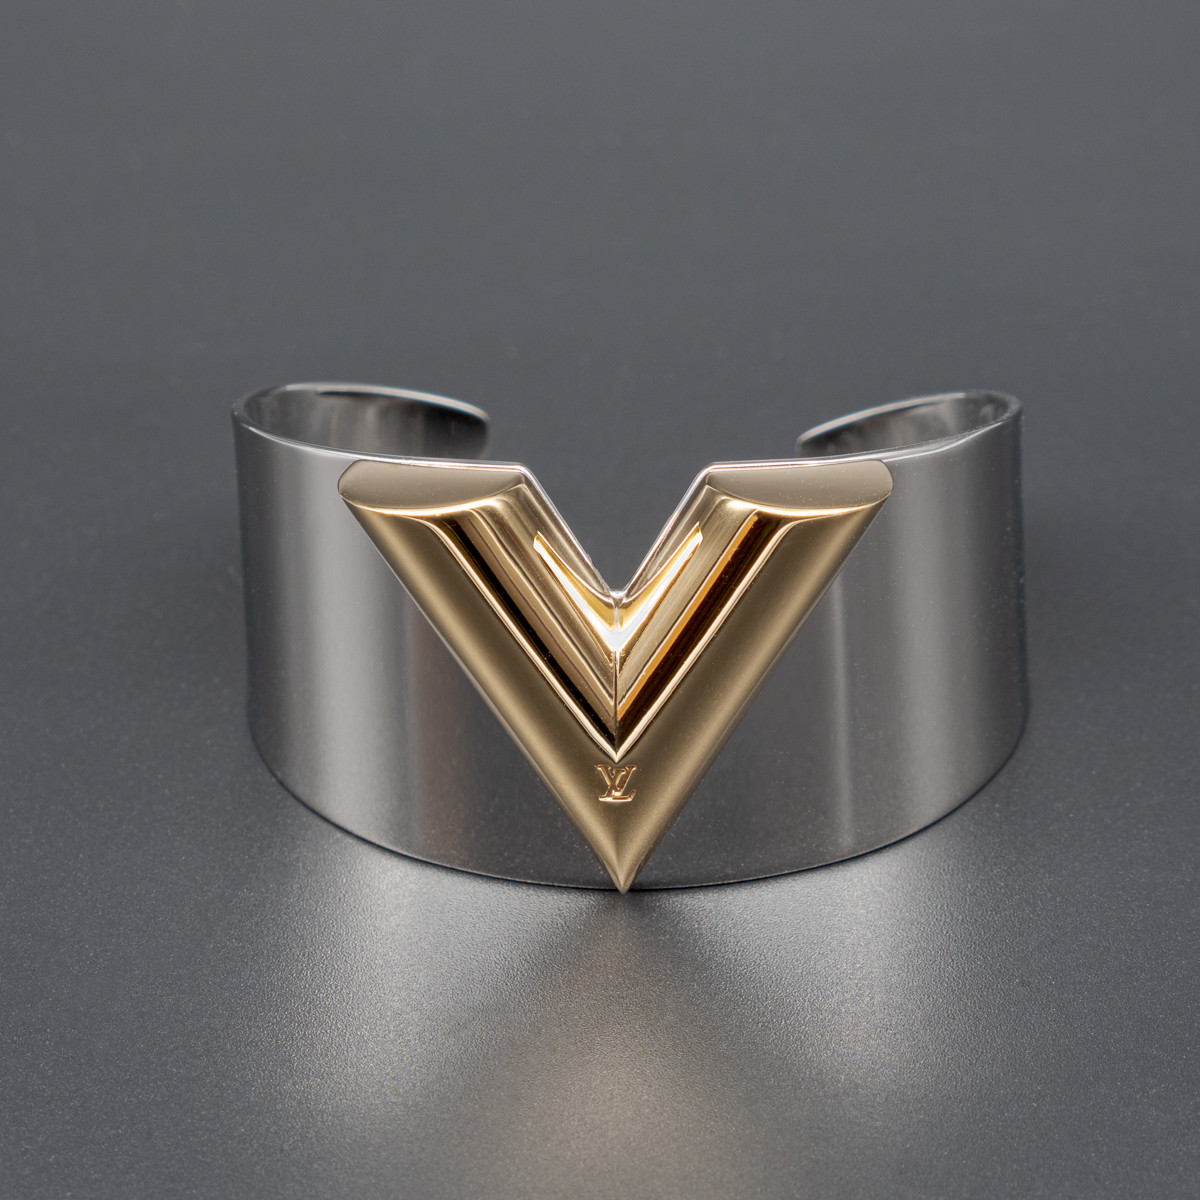 Louis Vuitton Essential V Bracelet Metal